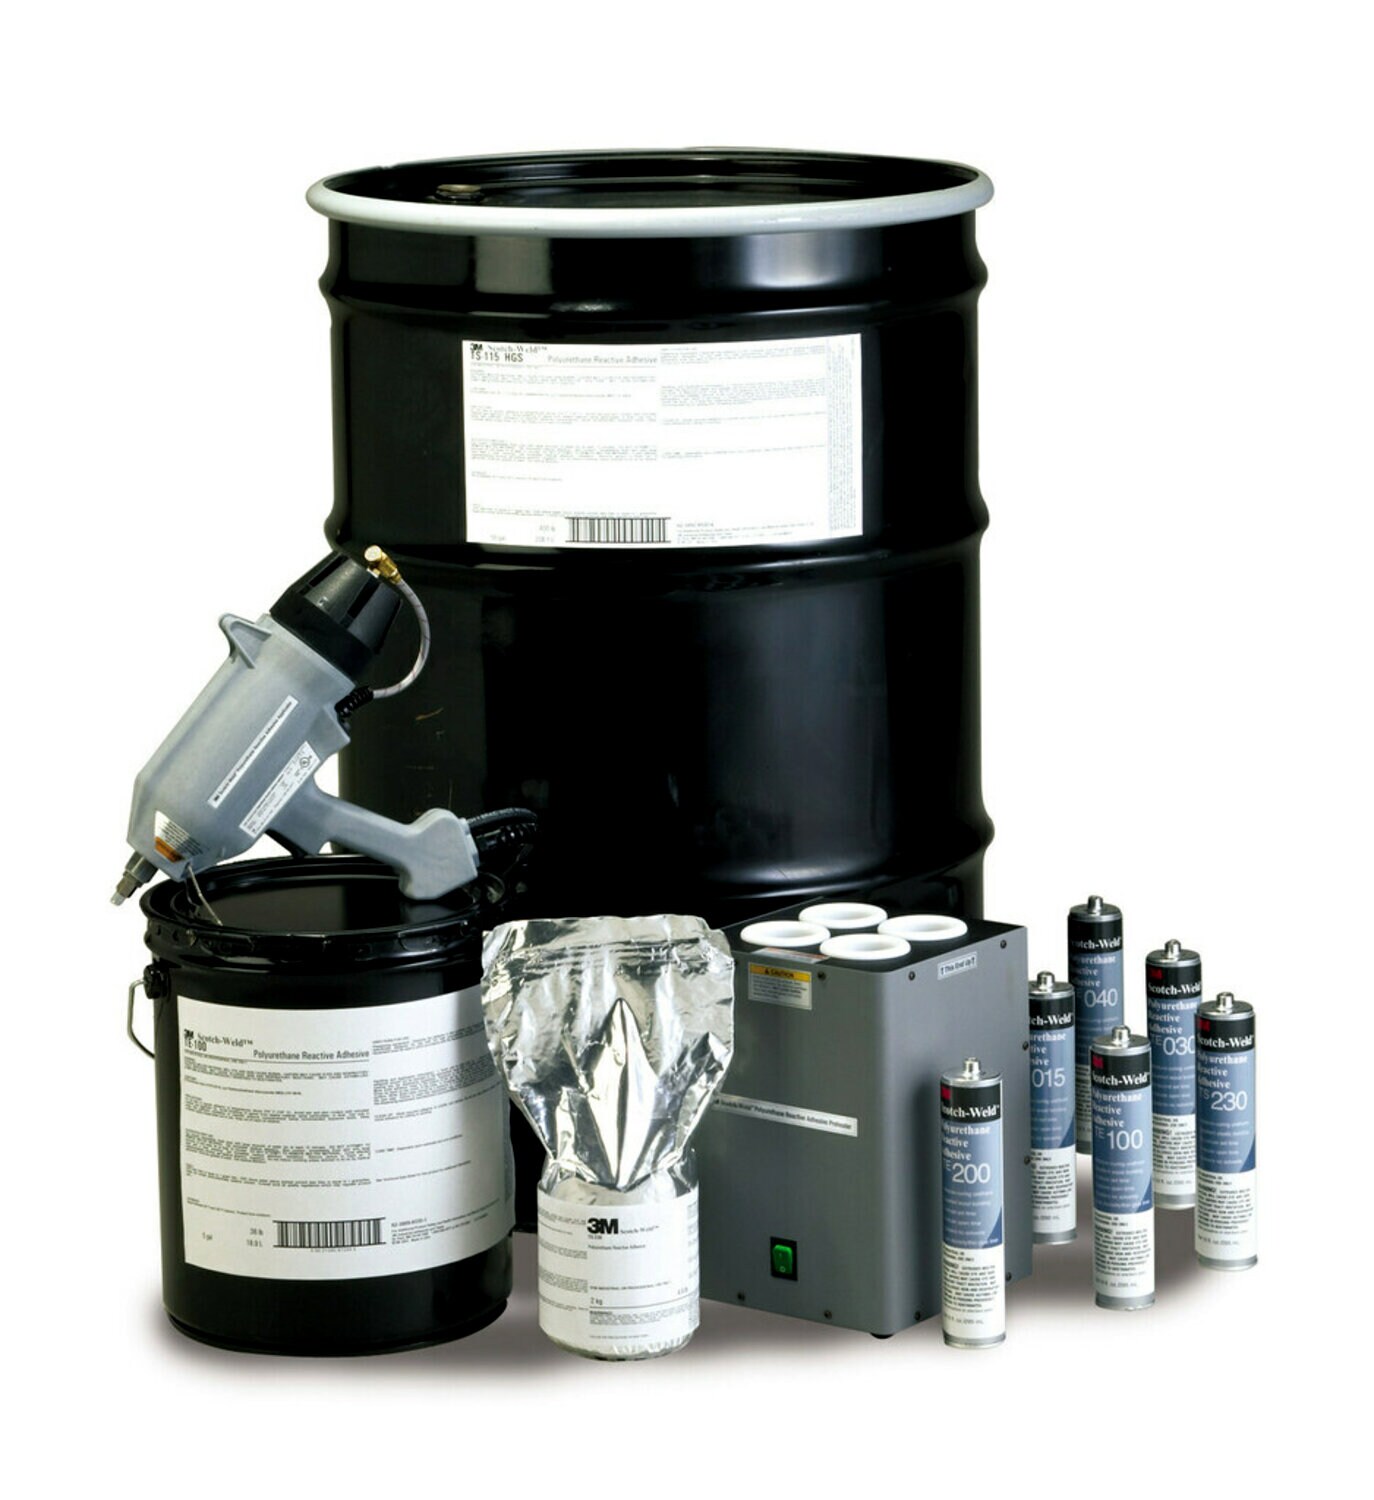 7010310236 - 3M Scotch-Weld PUR Adhesive TE030, Off-White, 5 Gallon (36 lb), Drum